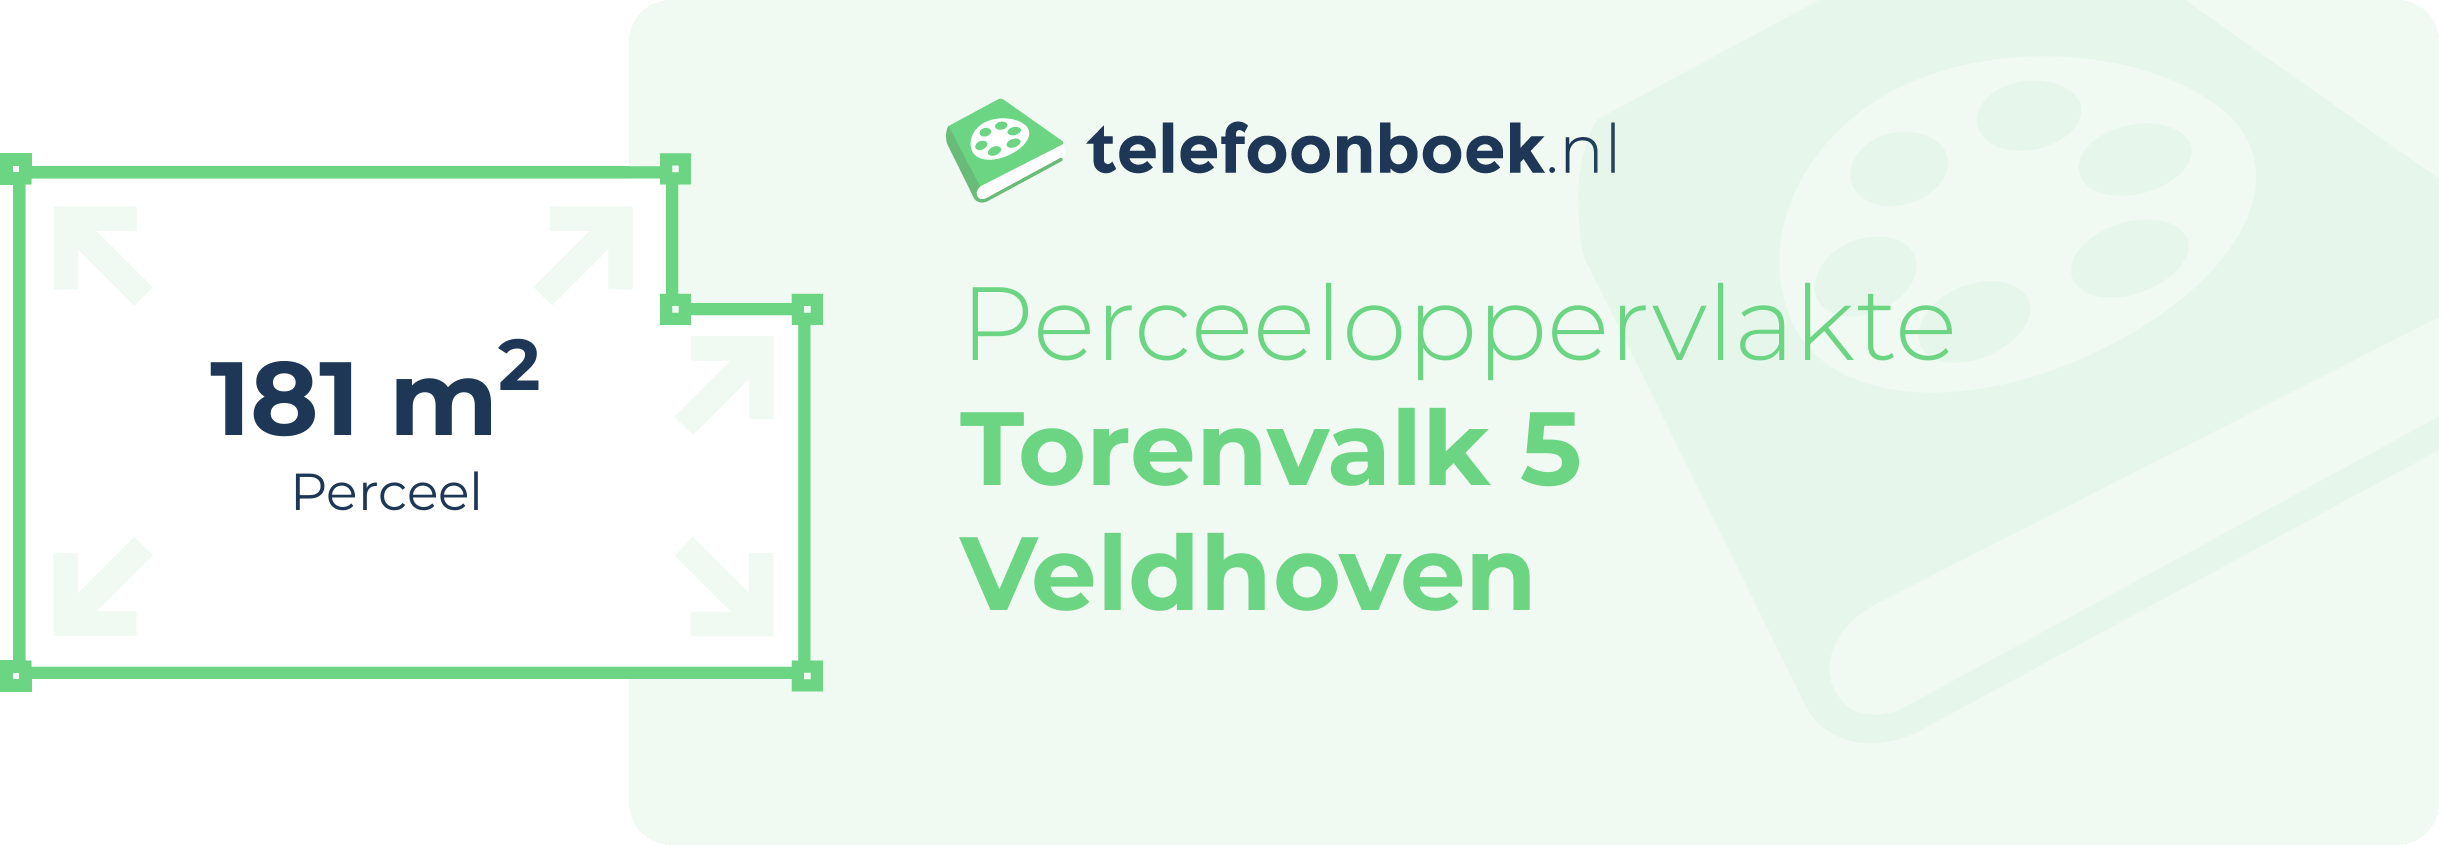 Perceeloppervlakte Torenvalk 5 Veldhoven